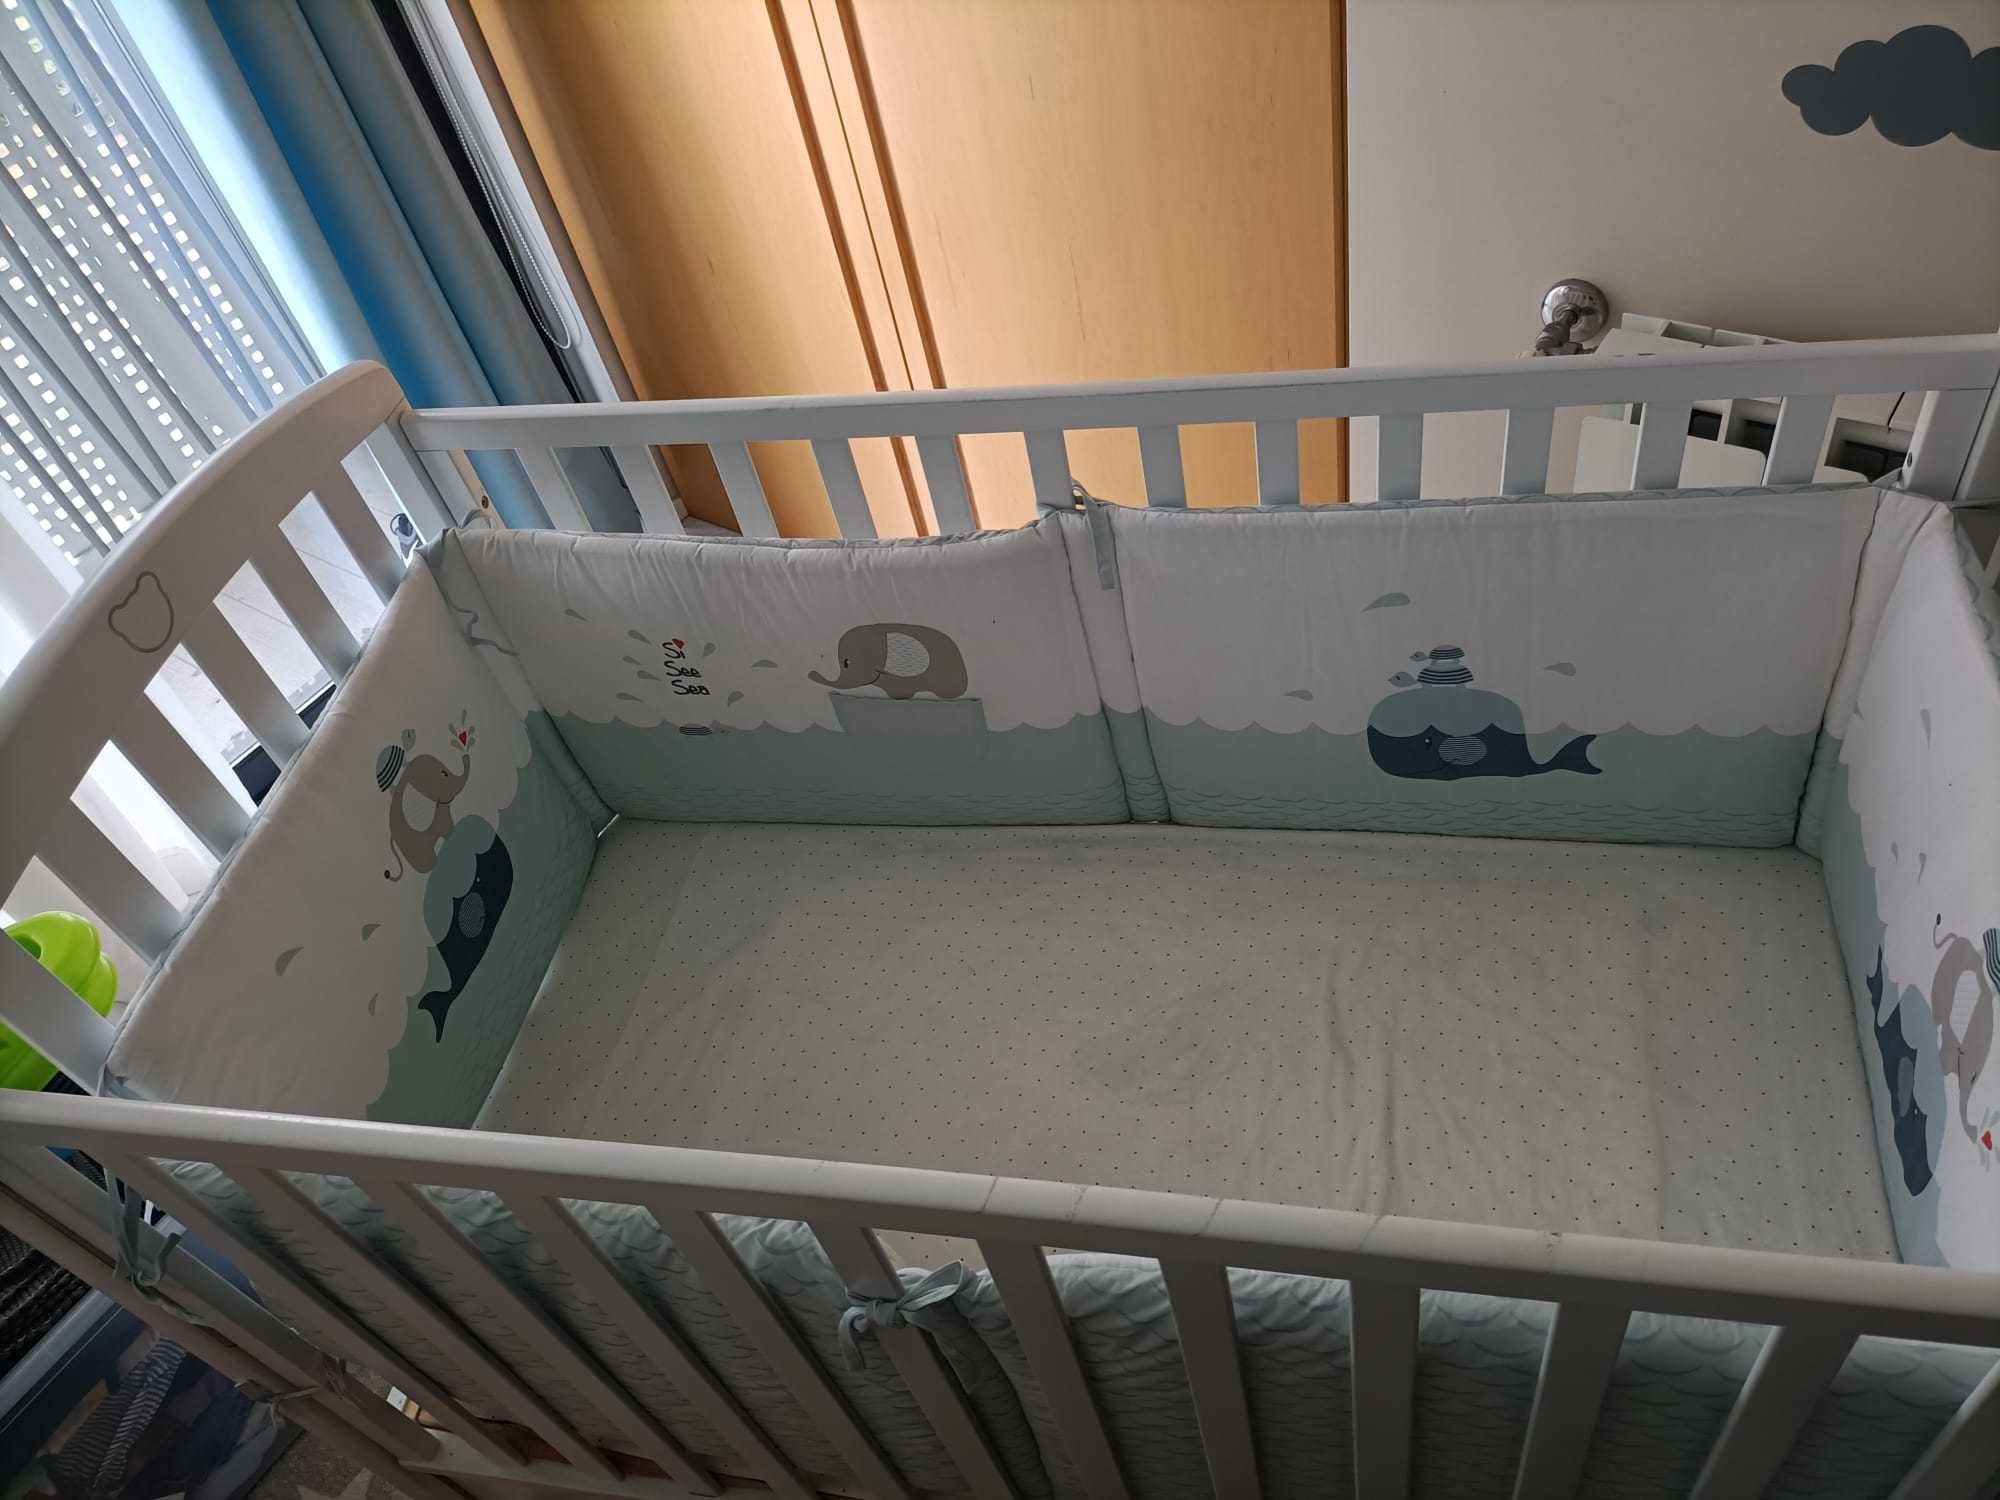 Cama de bebé em madeira branca com colchão e resguardo. Baixa de preço